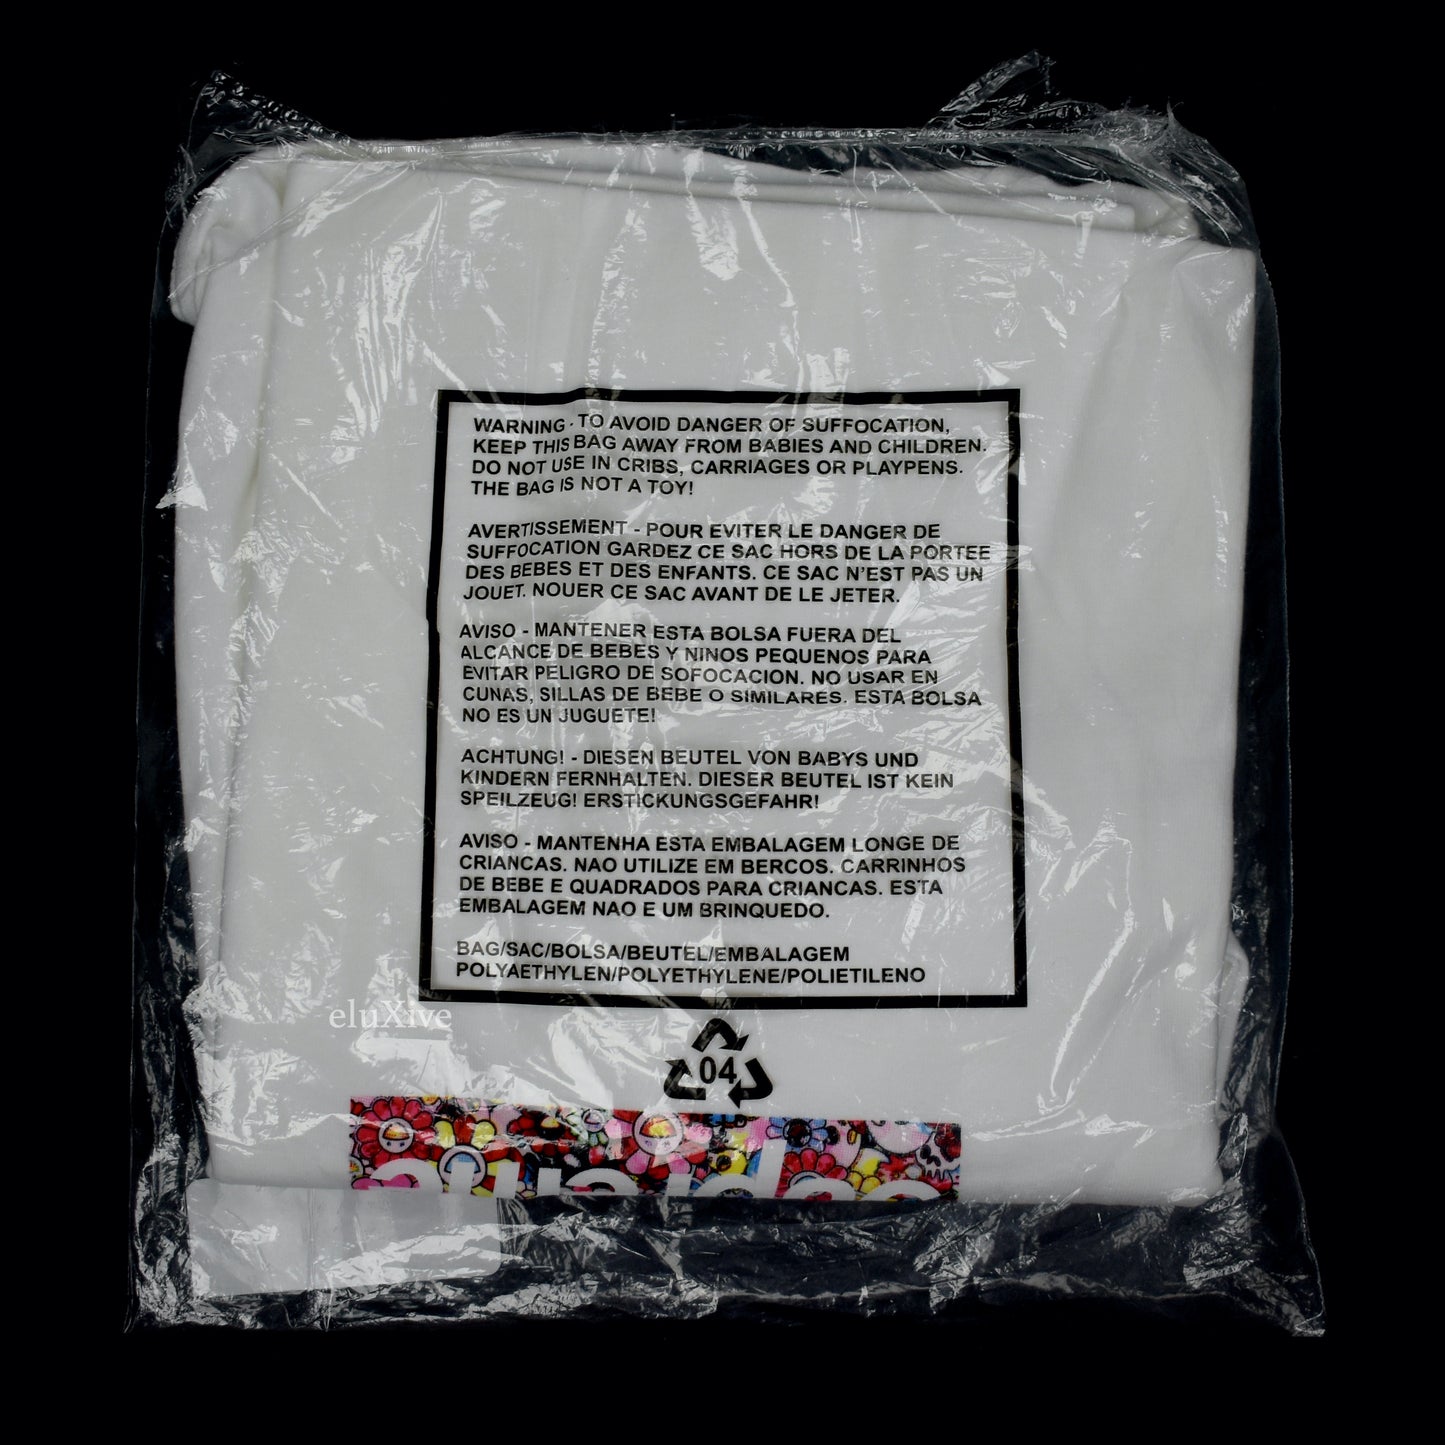 Supreme x Takashi Murakami - COVID-19 Relief Box Logo T-Shirt (SS20)